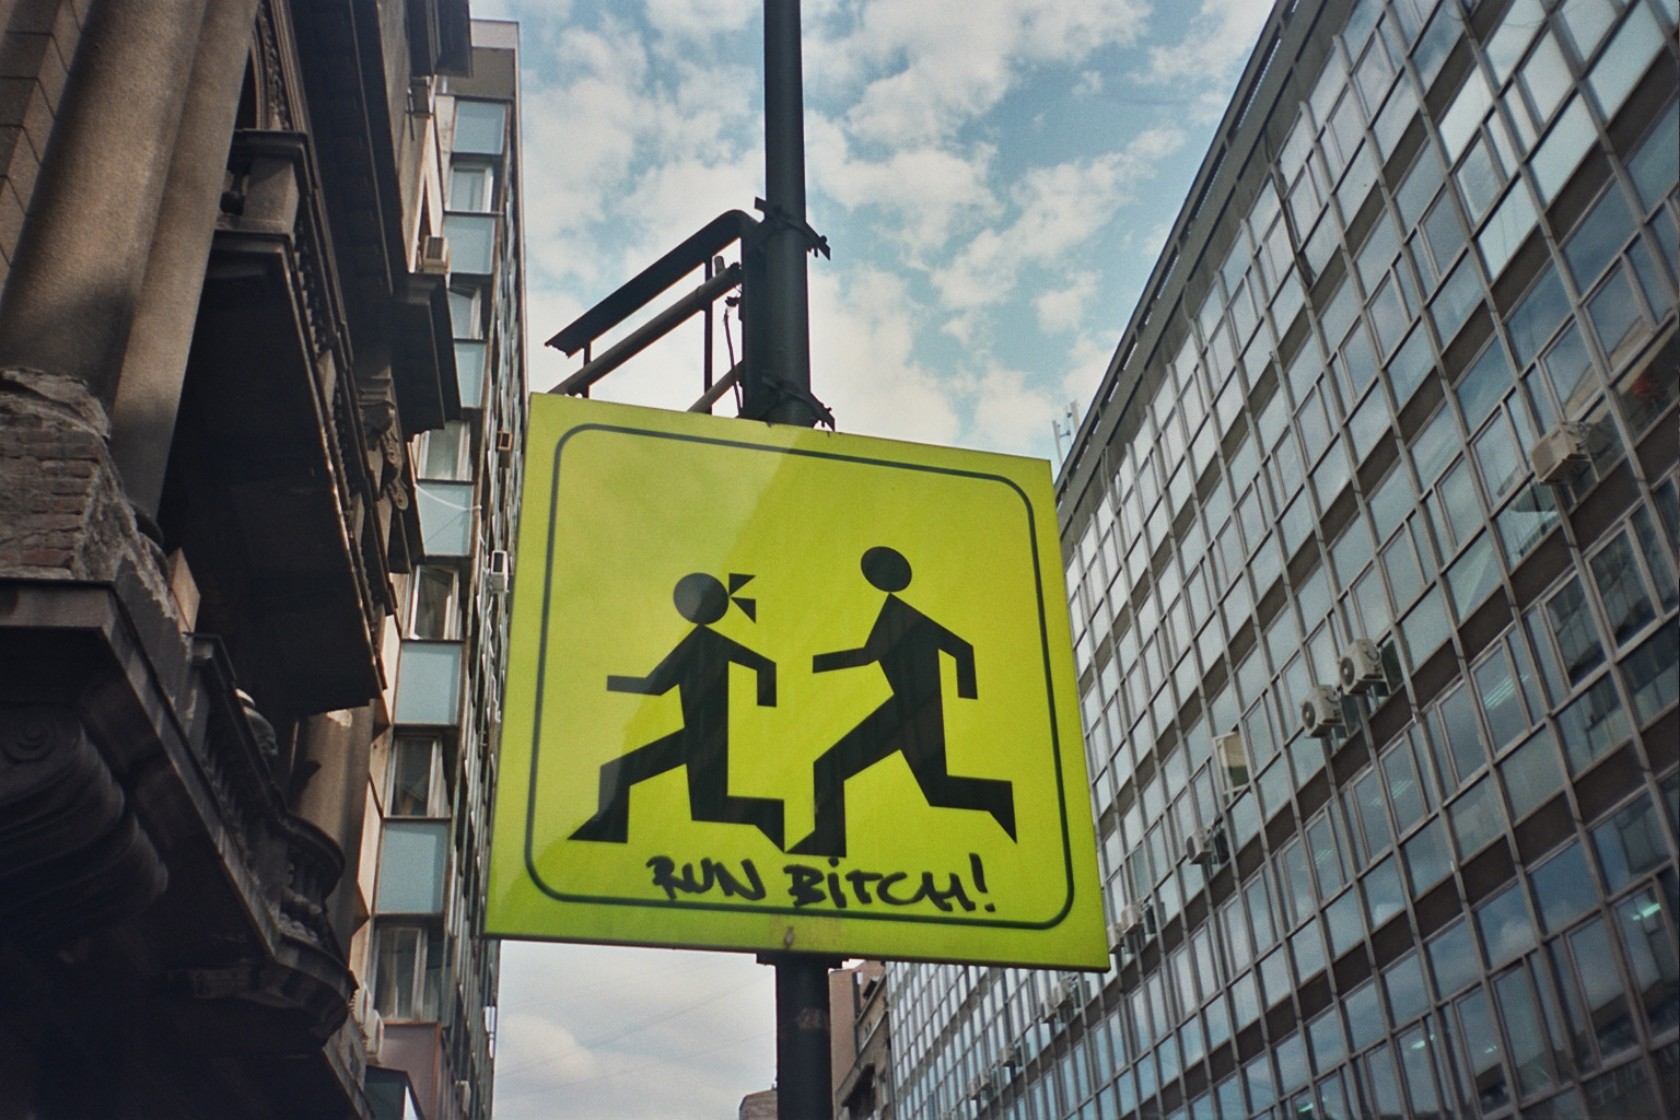 City Sign Street Light Building Children Run Running 1680x1120